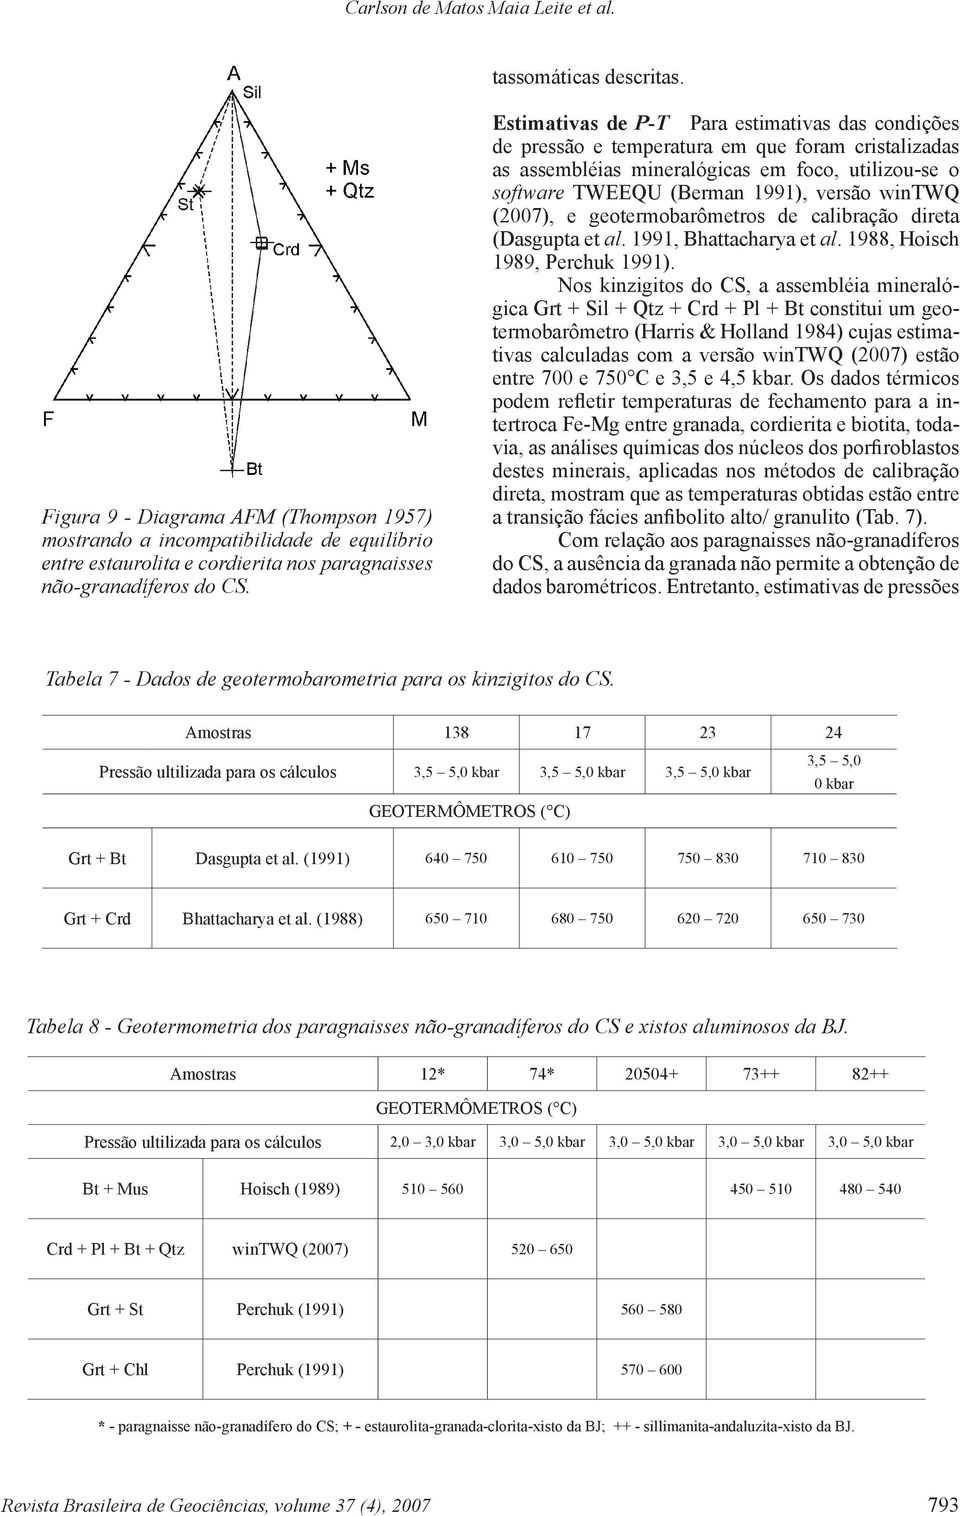 Estimativas de P-T Para estimativas das condições de pressão e temperatura em que foram cristalizadas as assembléias mineralógicas em foco, utilizou-se o software TWEEQU (Berman 1991), versão wintwq